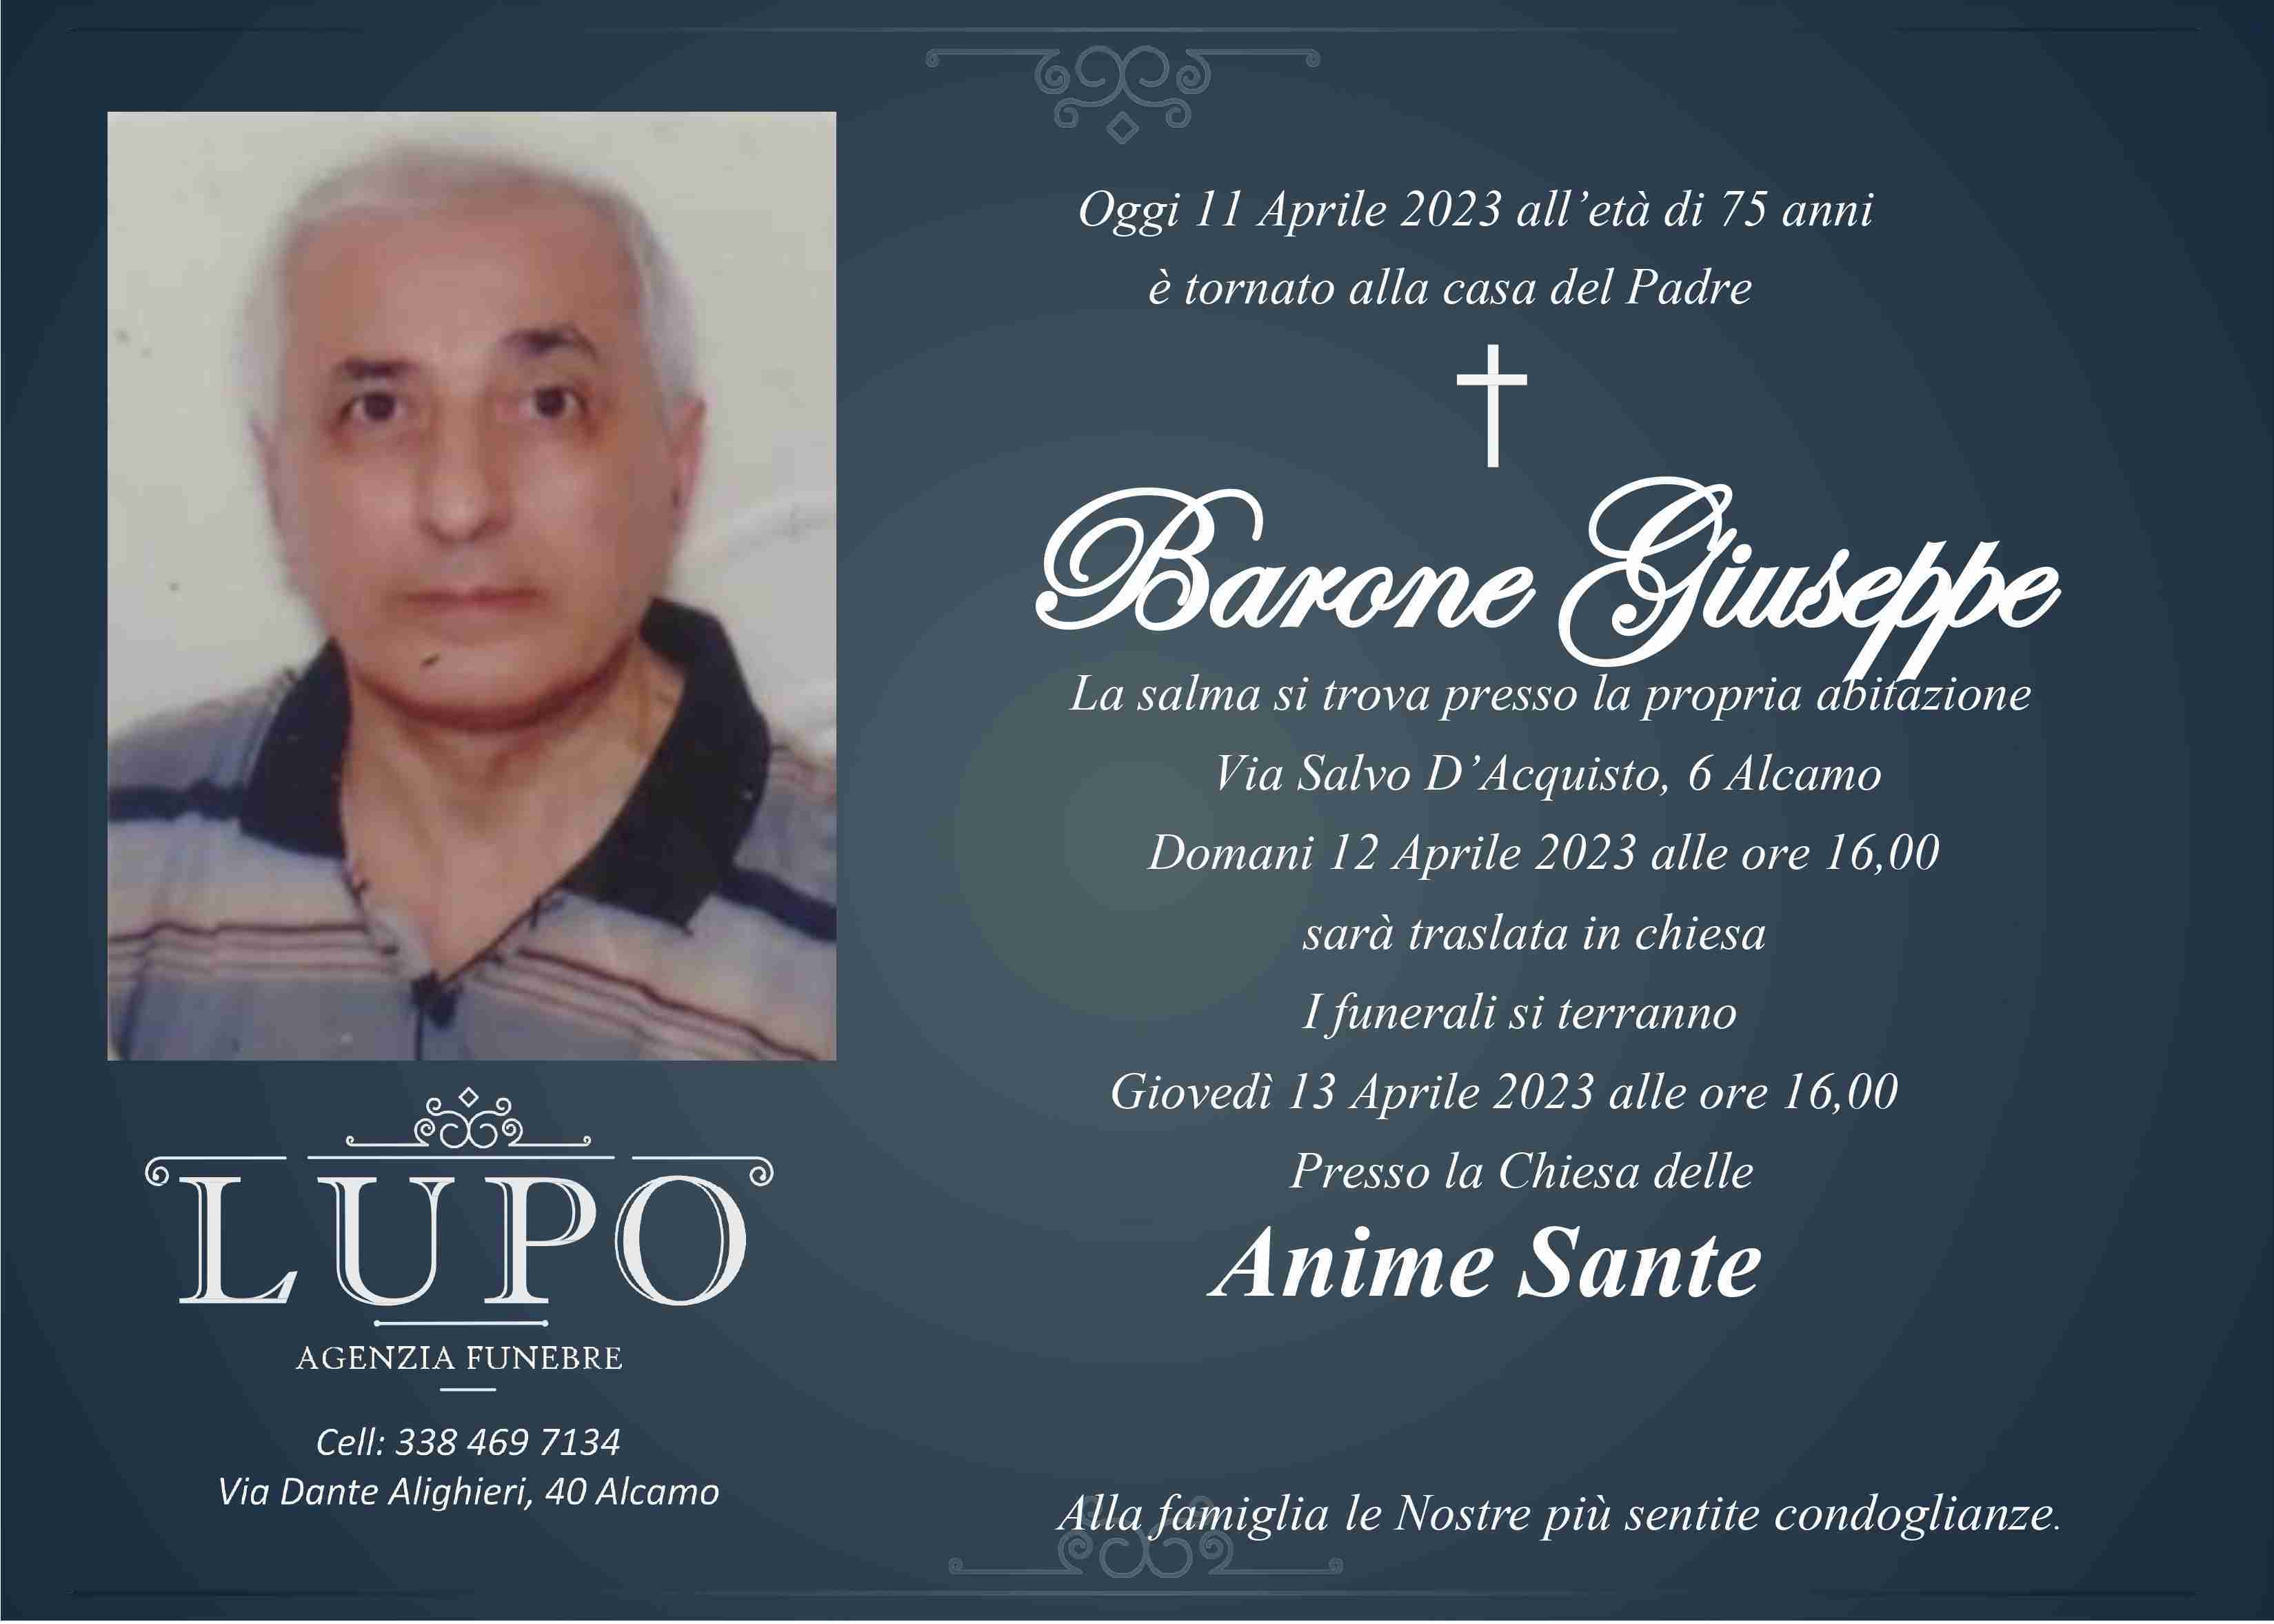 Giuseppe Barone